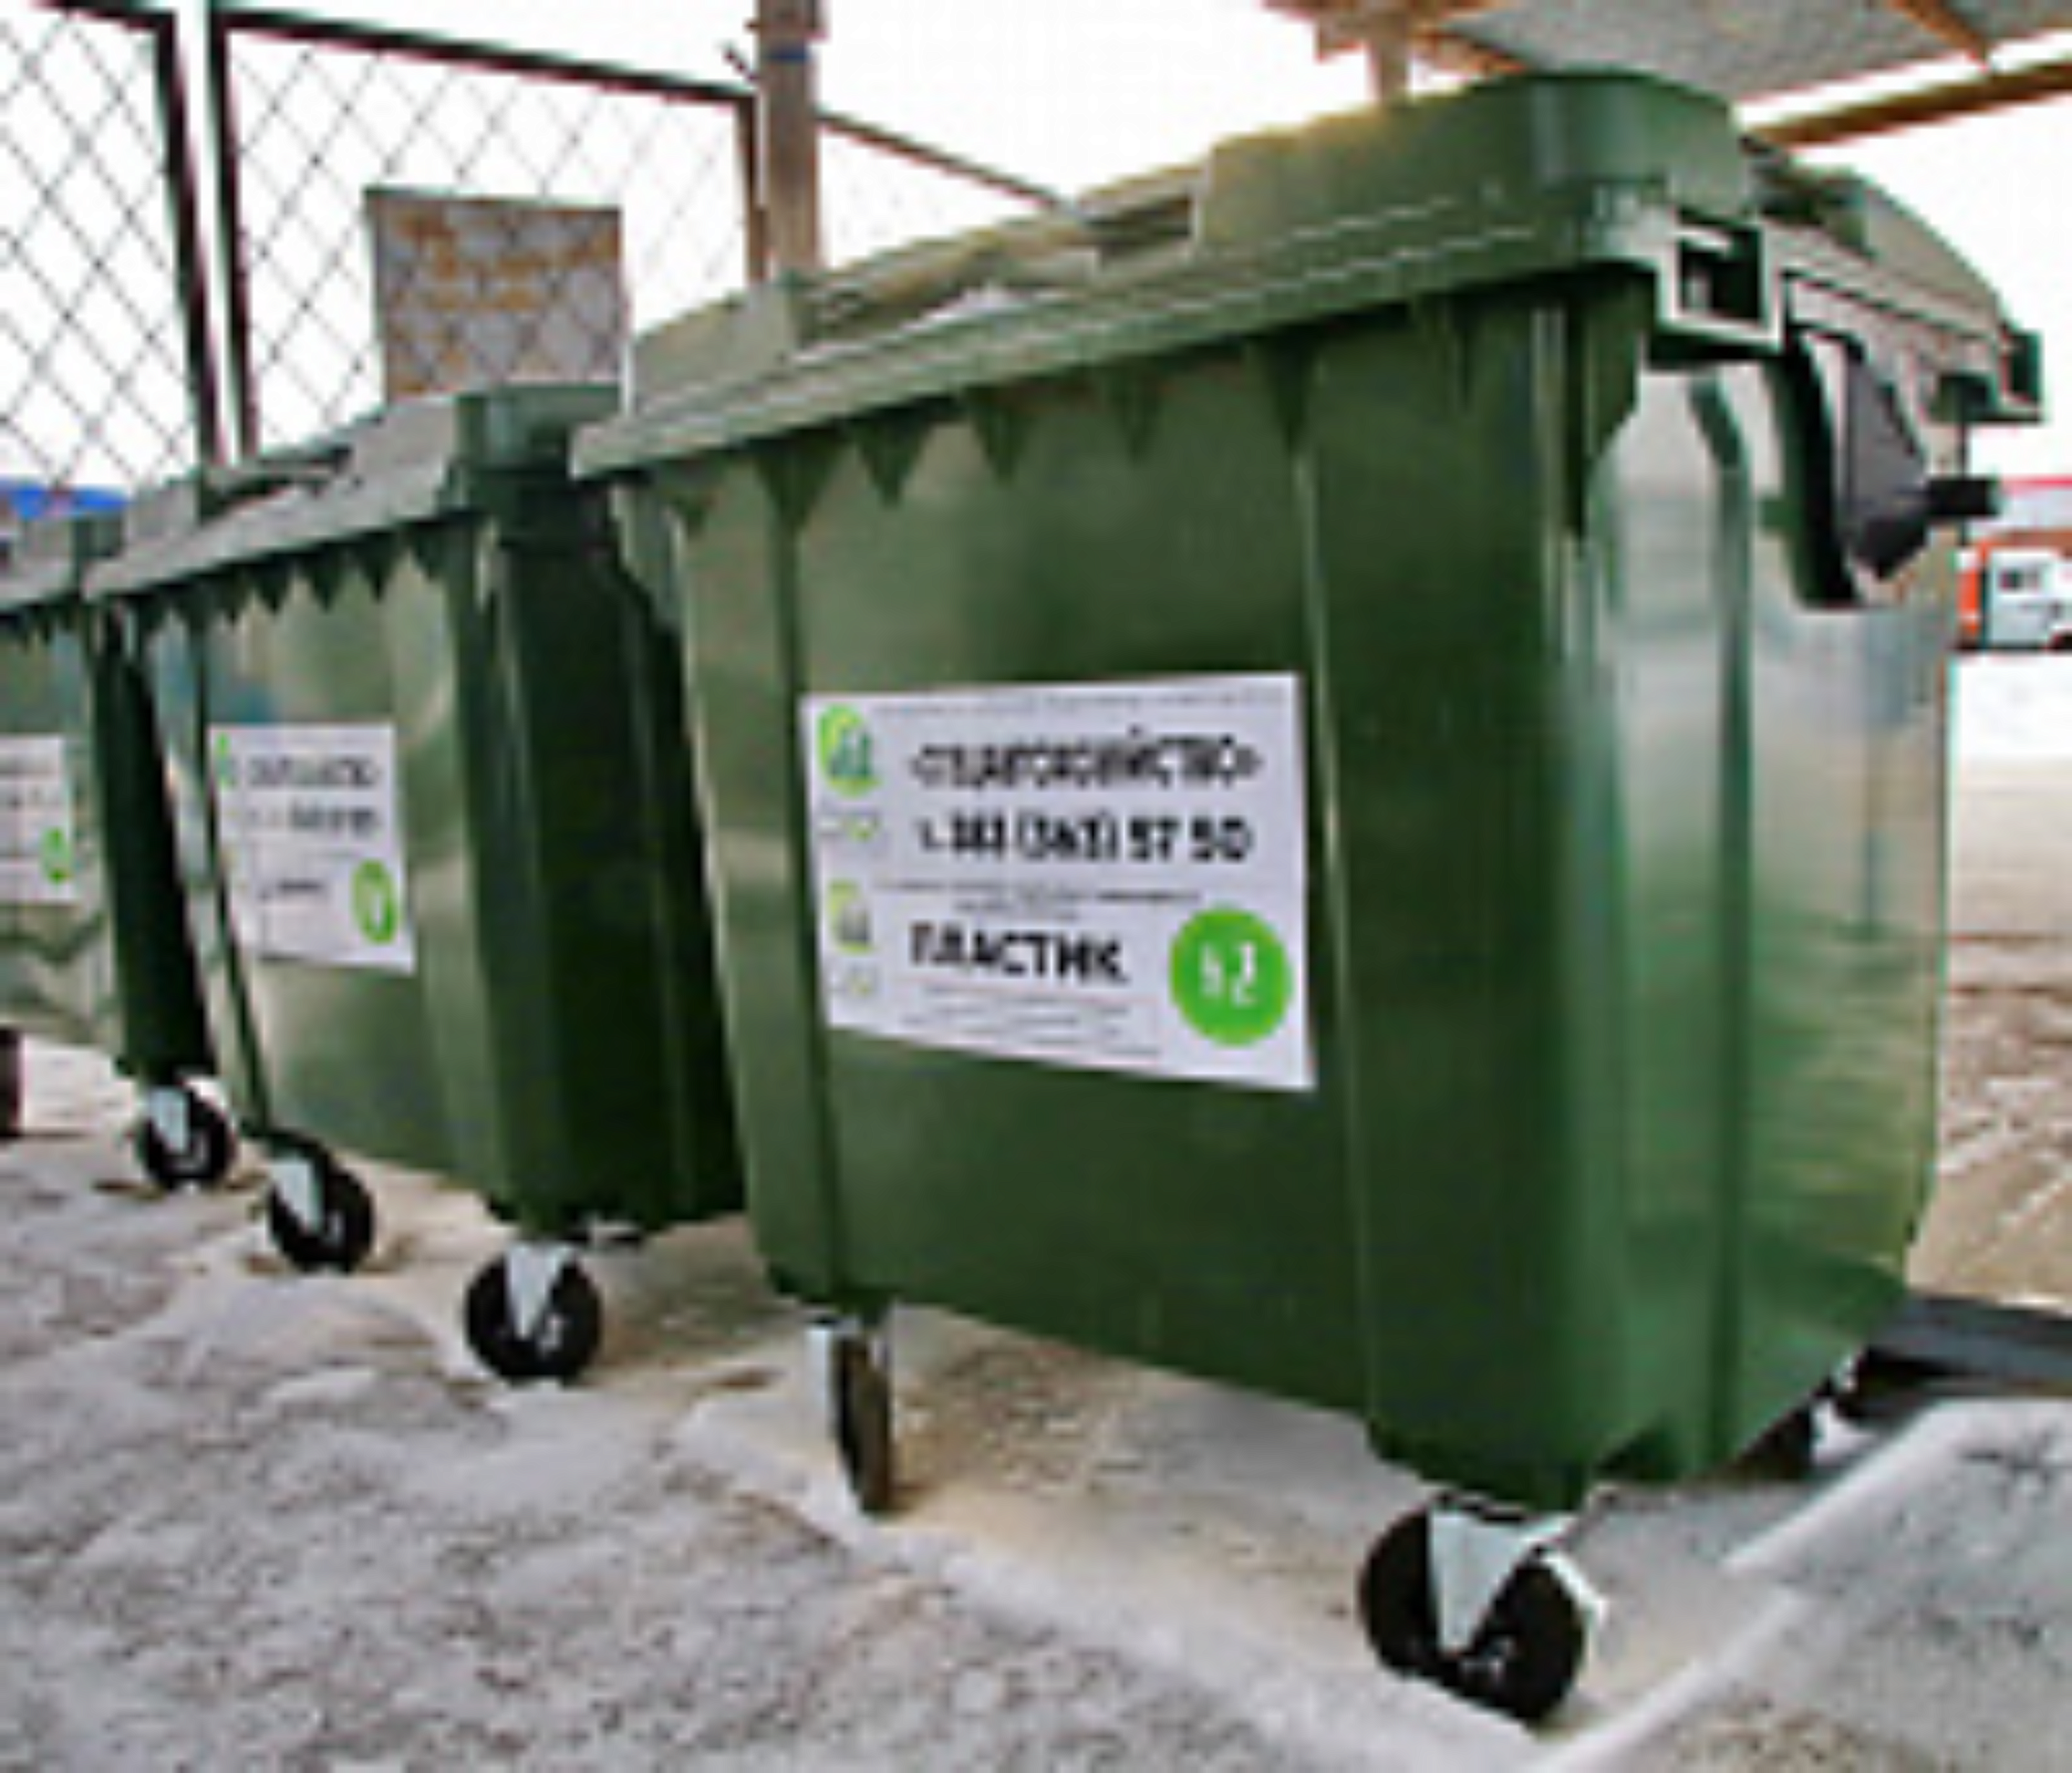 В Новосибирске появилась услуга для тех, кто не любит выносить мусор